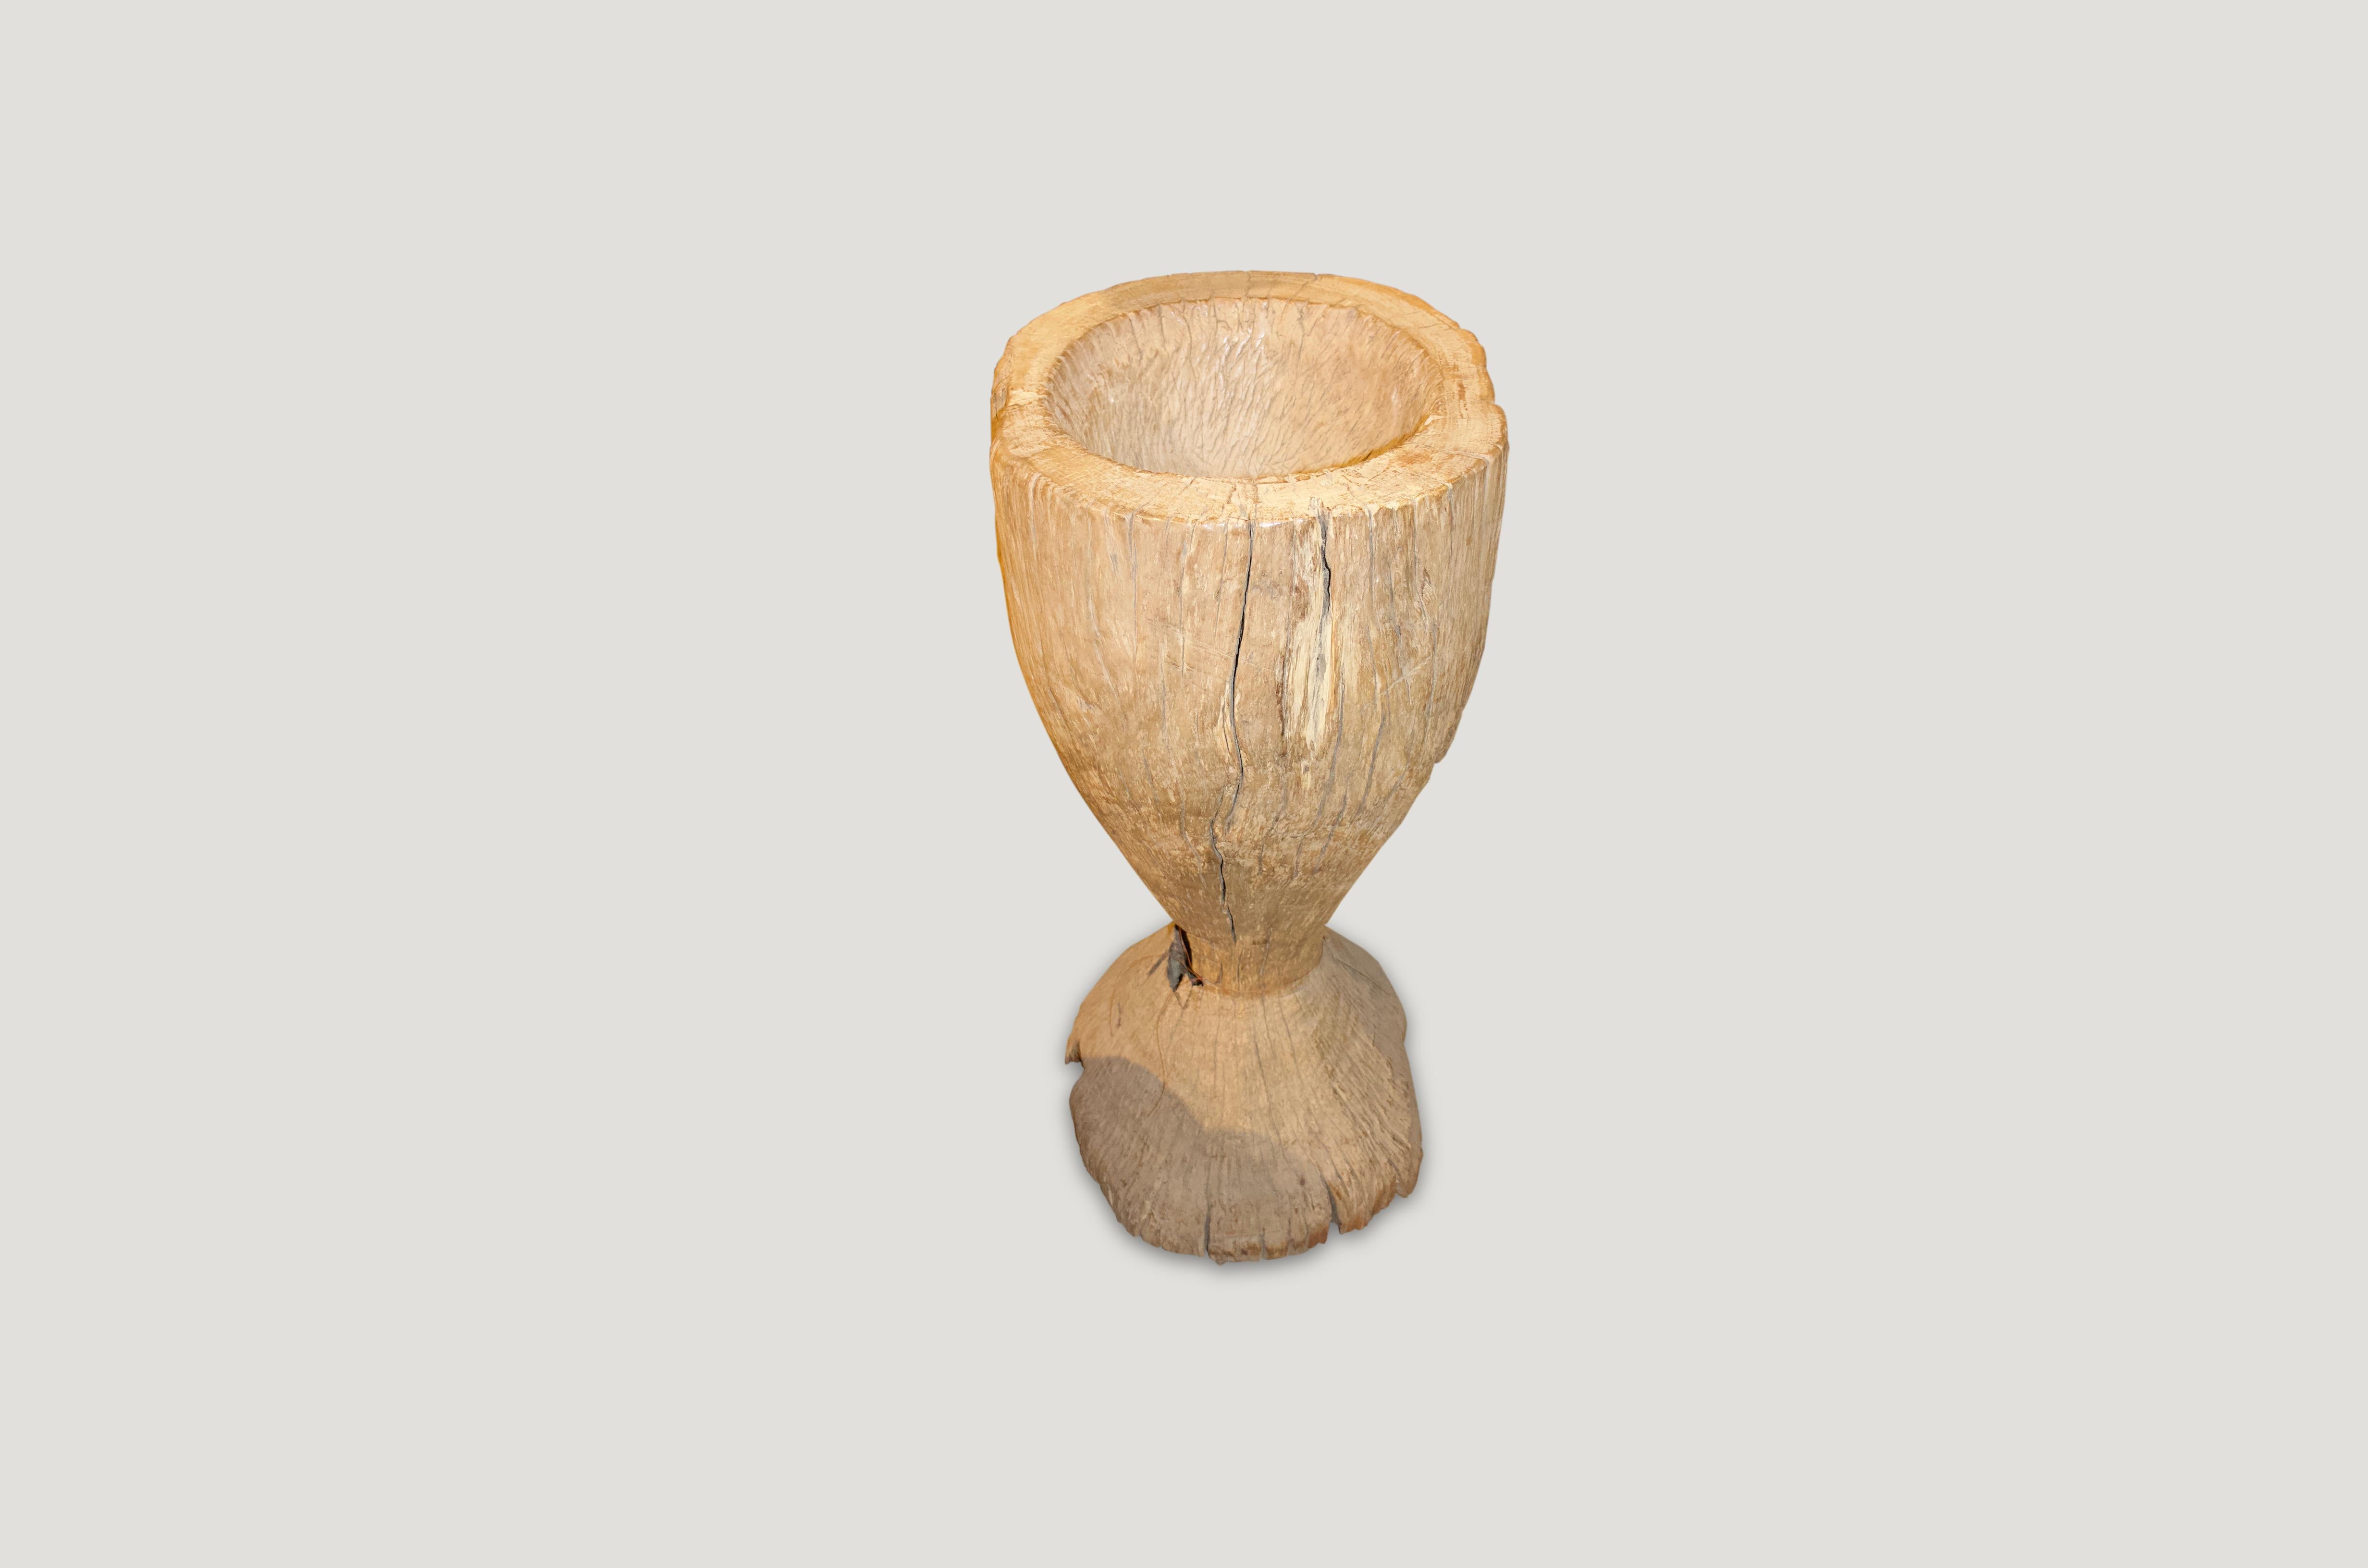 Antiker Reispflücker, geschnitzt aus einer einzigen Teakwurzel. Wunderschön als Skulptur, als Handtuchhalter oder als Sekthalter für Partys. Auch als Tischfuß mit Glasplatte.

Dieser Reispflücker wurde im Geiste von Wabi-Sabi hergestellt, einer